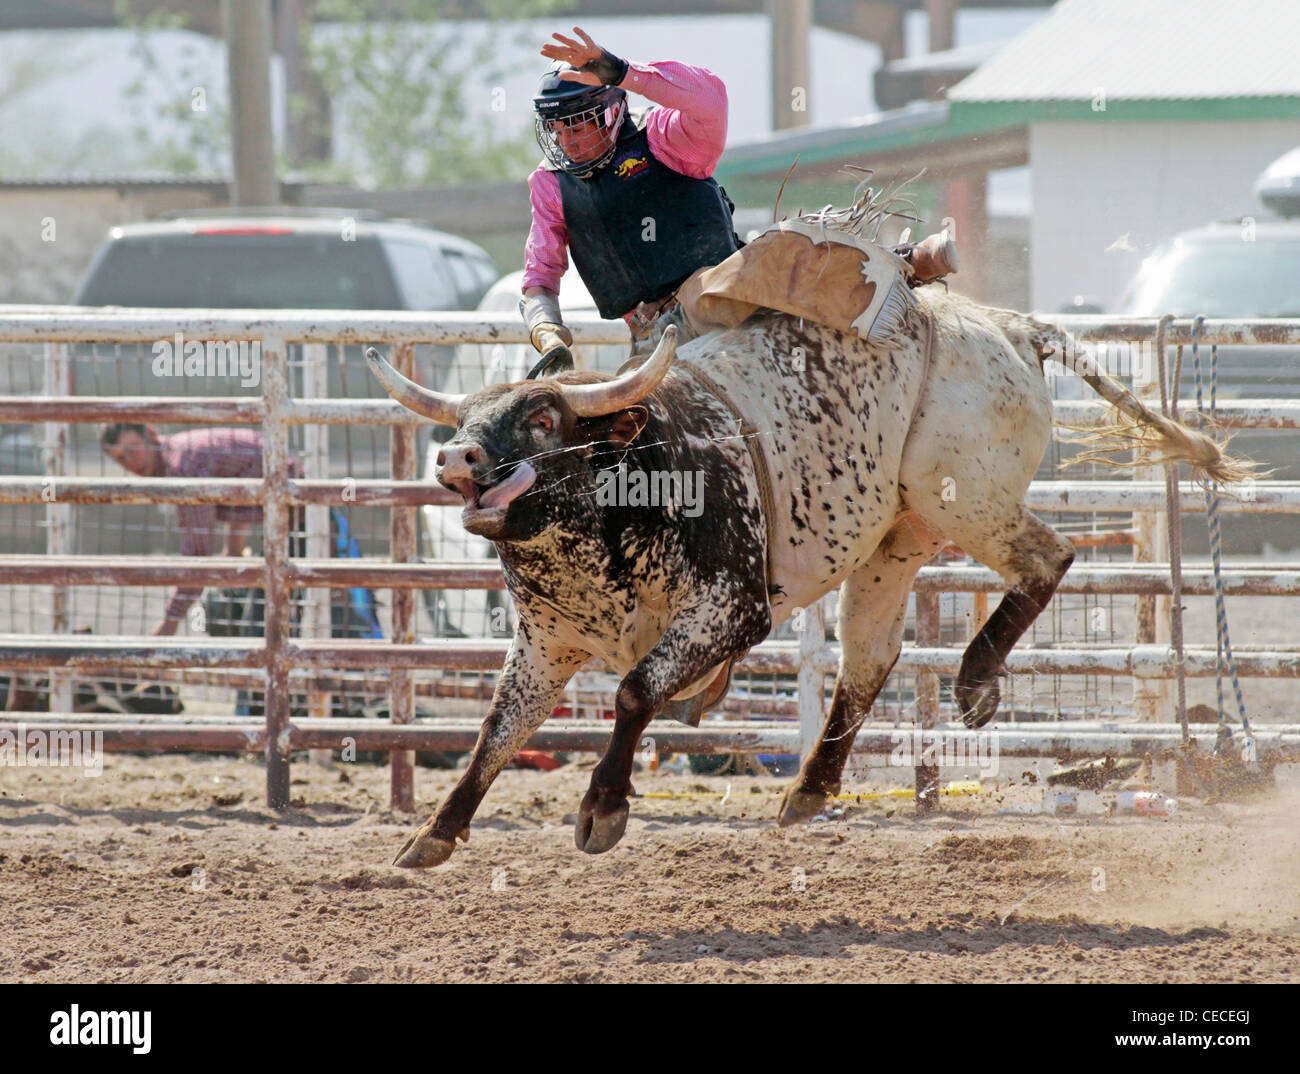 Socorro, Nuovo Messico, Stati Uniti d'America. Concorrente prendendo parte al toro di equitazione concorrenza durante il rodeo annuale. Foto Stock